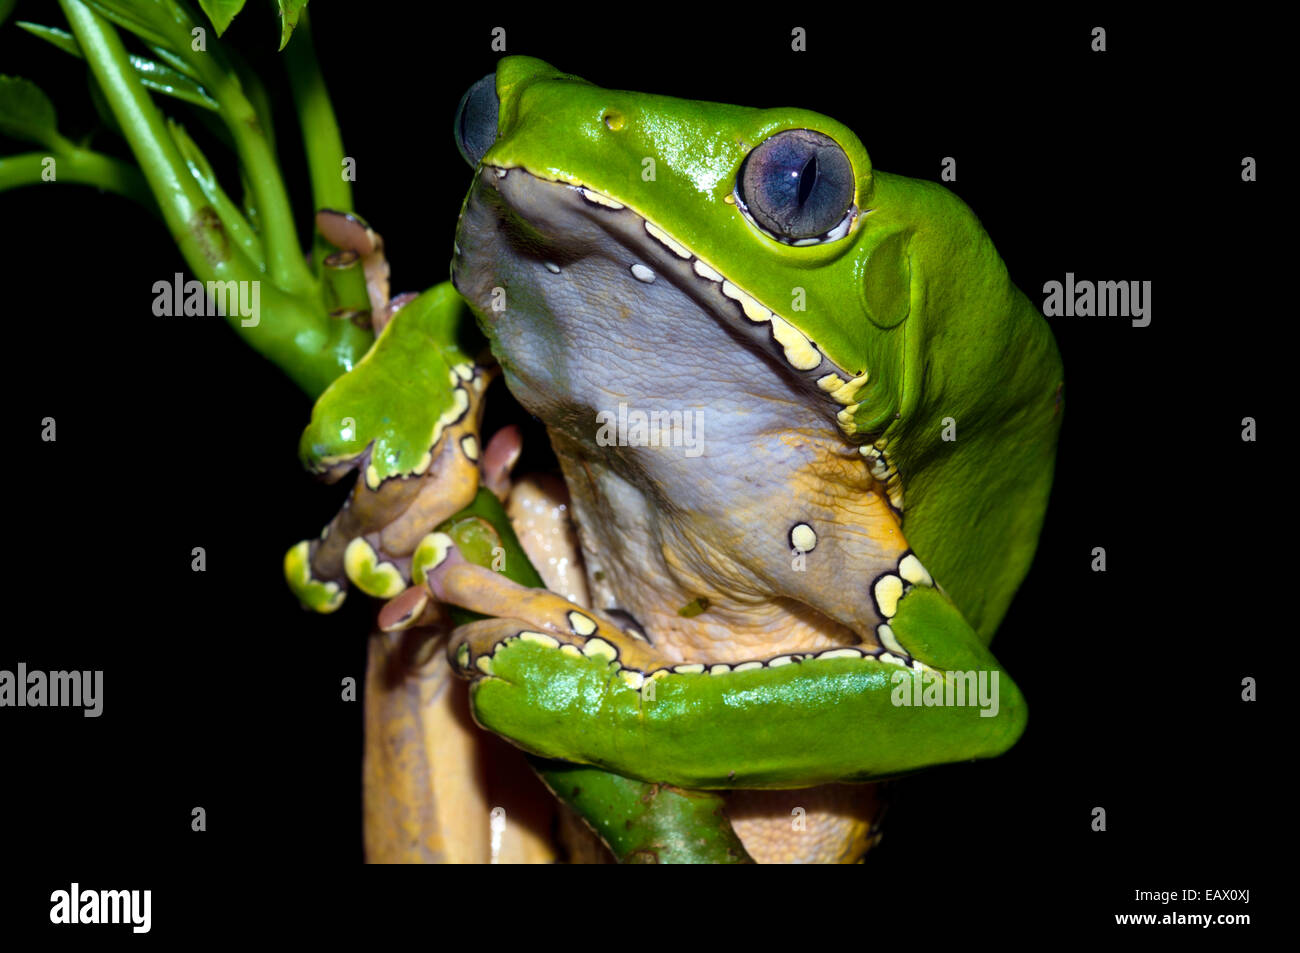 Einen hellen grünen Riesen Blatt Frosch festhalten an einem Regenwald Pflanzenstängel mit seinen langen, breiten Fuß-Pads. Stockfoto